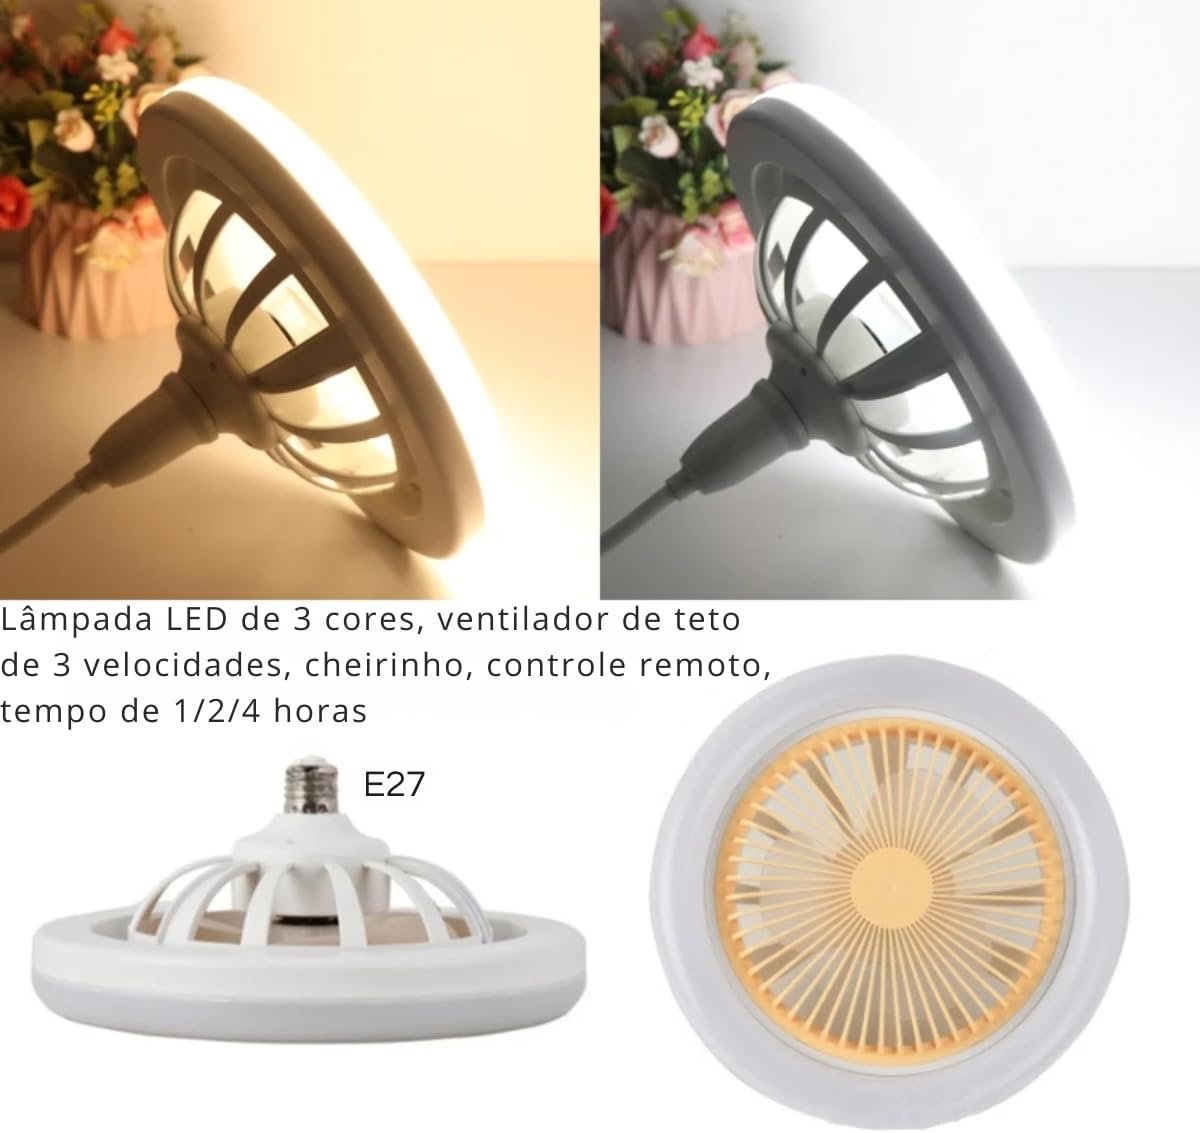 Ventilador De Teto Lâmpada LED 2 em 1 - Ilumine e Refresque Seu Espaço com Controle Remoto e Design  - 5